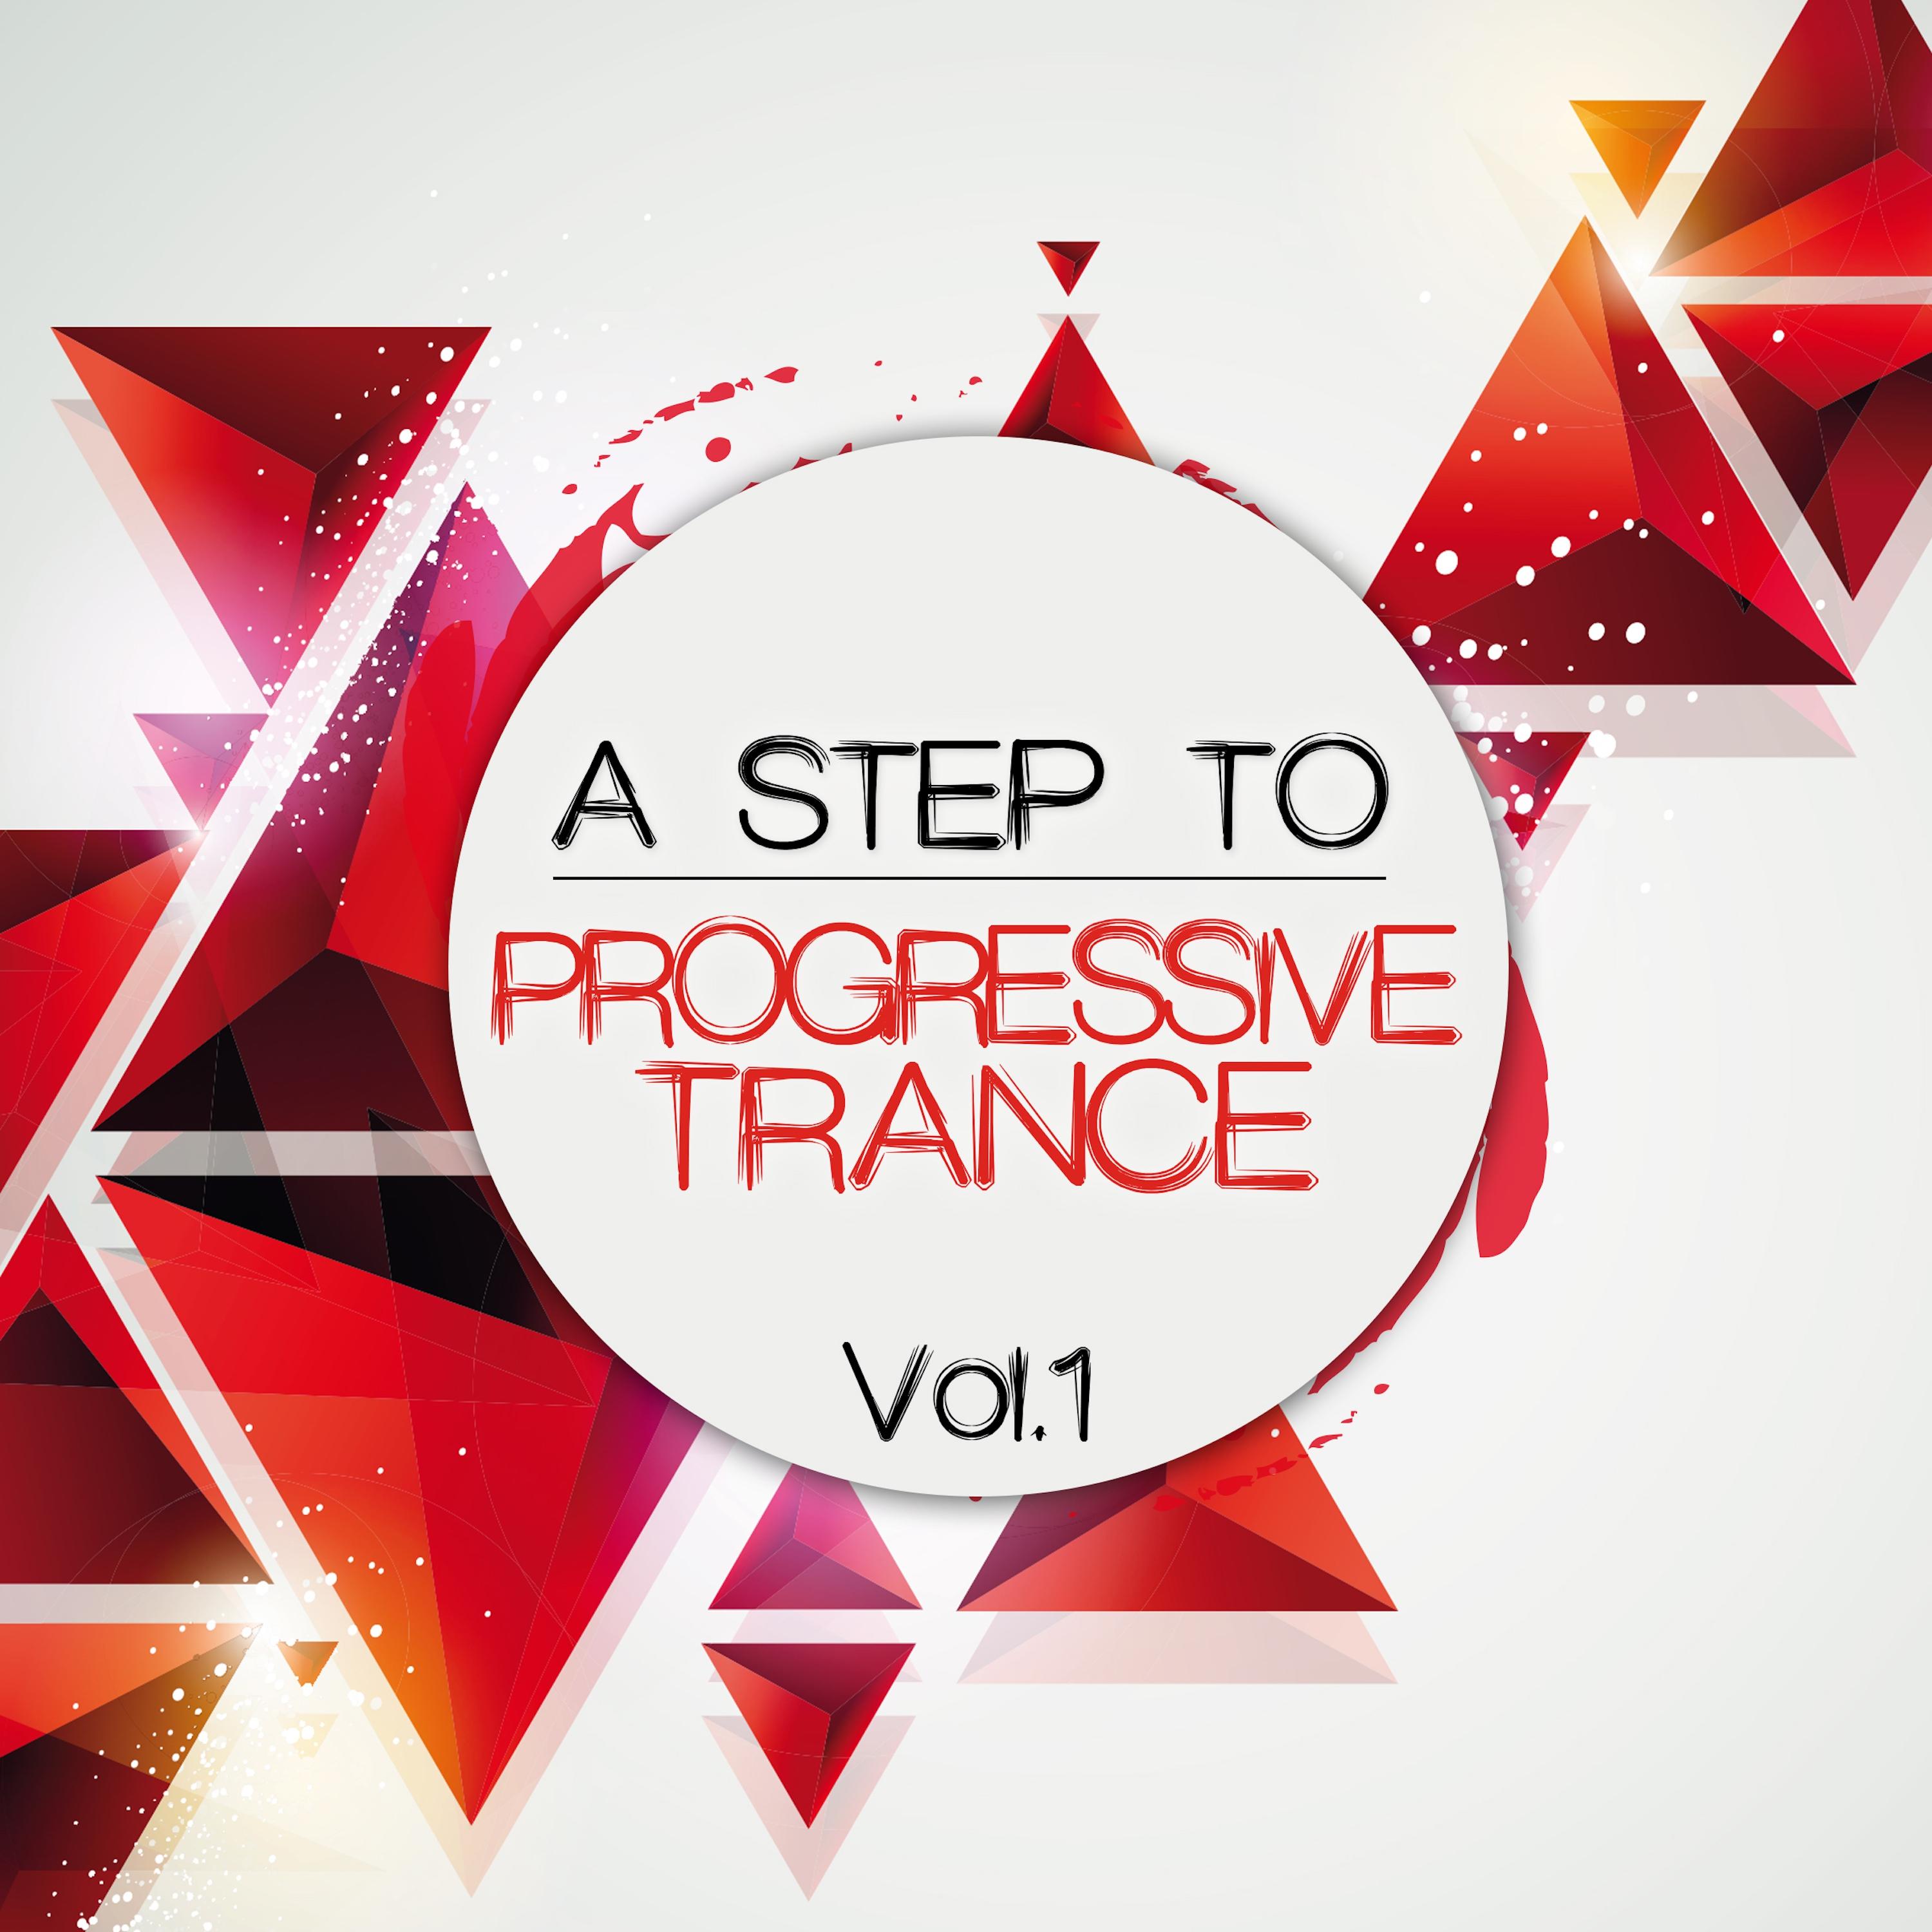 A Step to Progressive Trance, Vol. 1